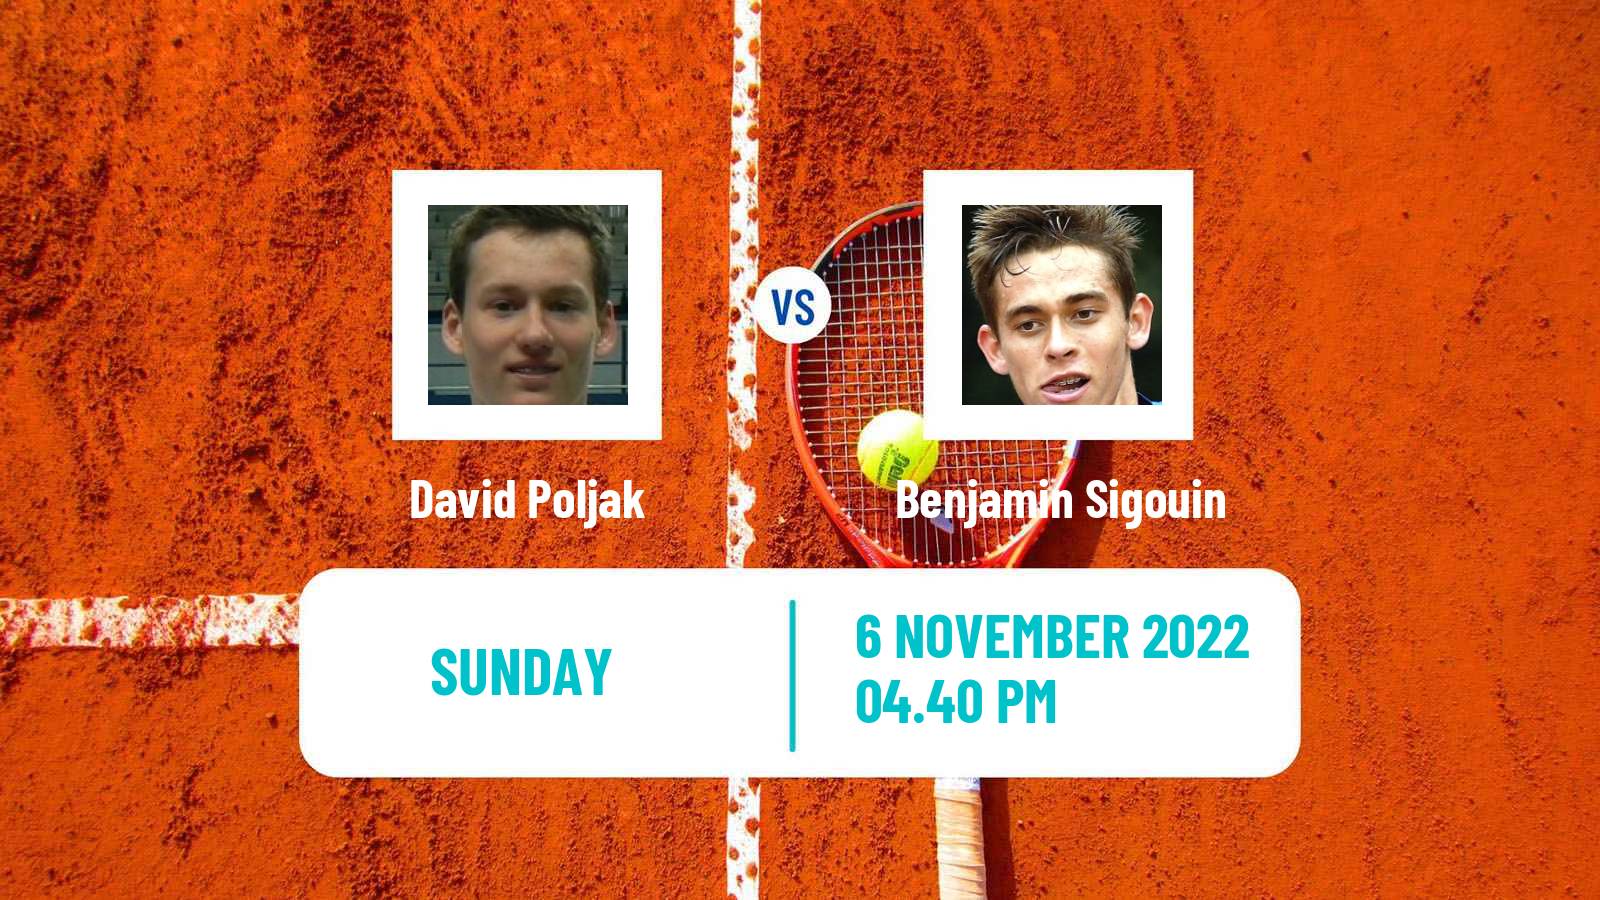 Tennis ATP Challenger David Poljak - Benjamin Sigouin